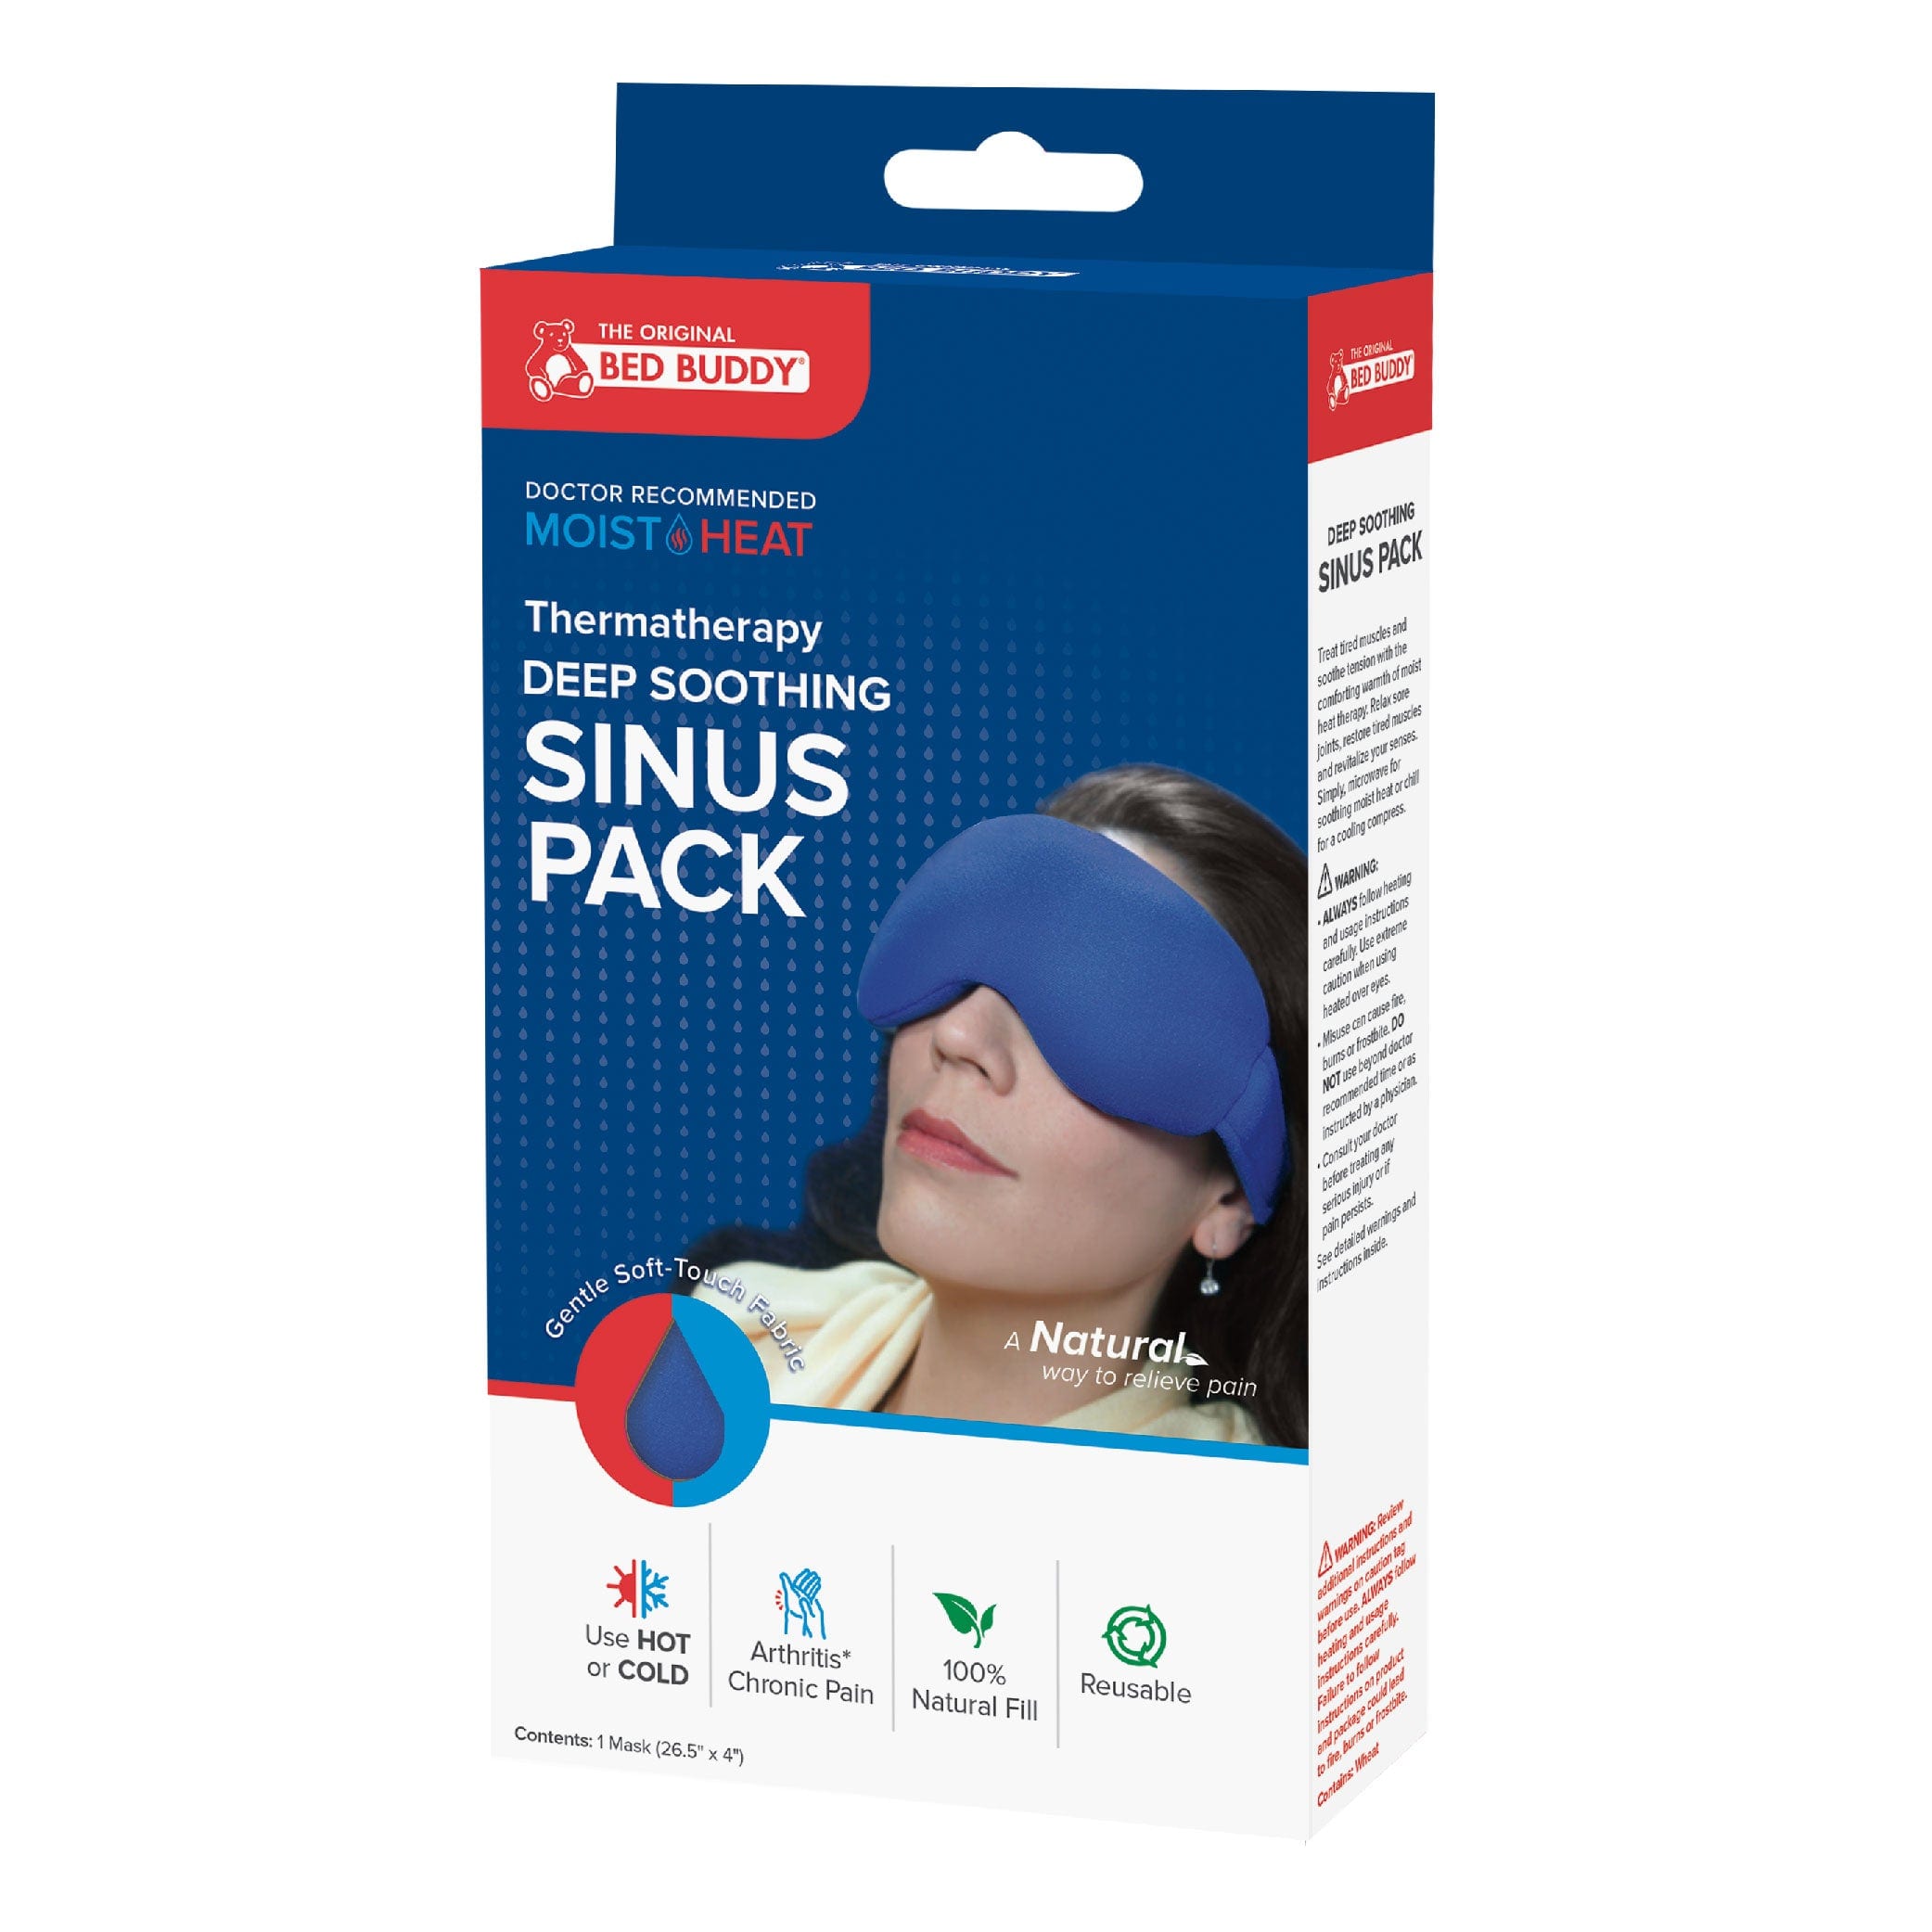 Bed Buddy Sinus Pack packaging